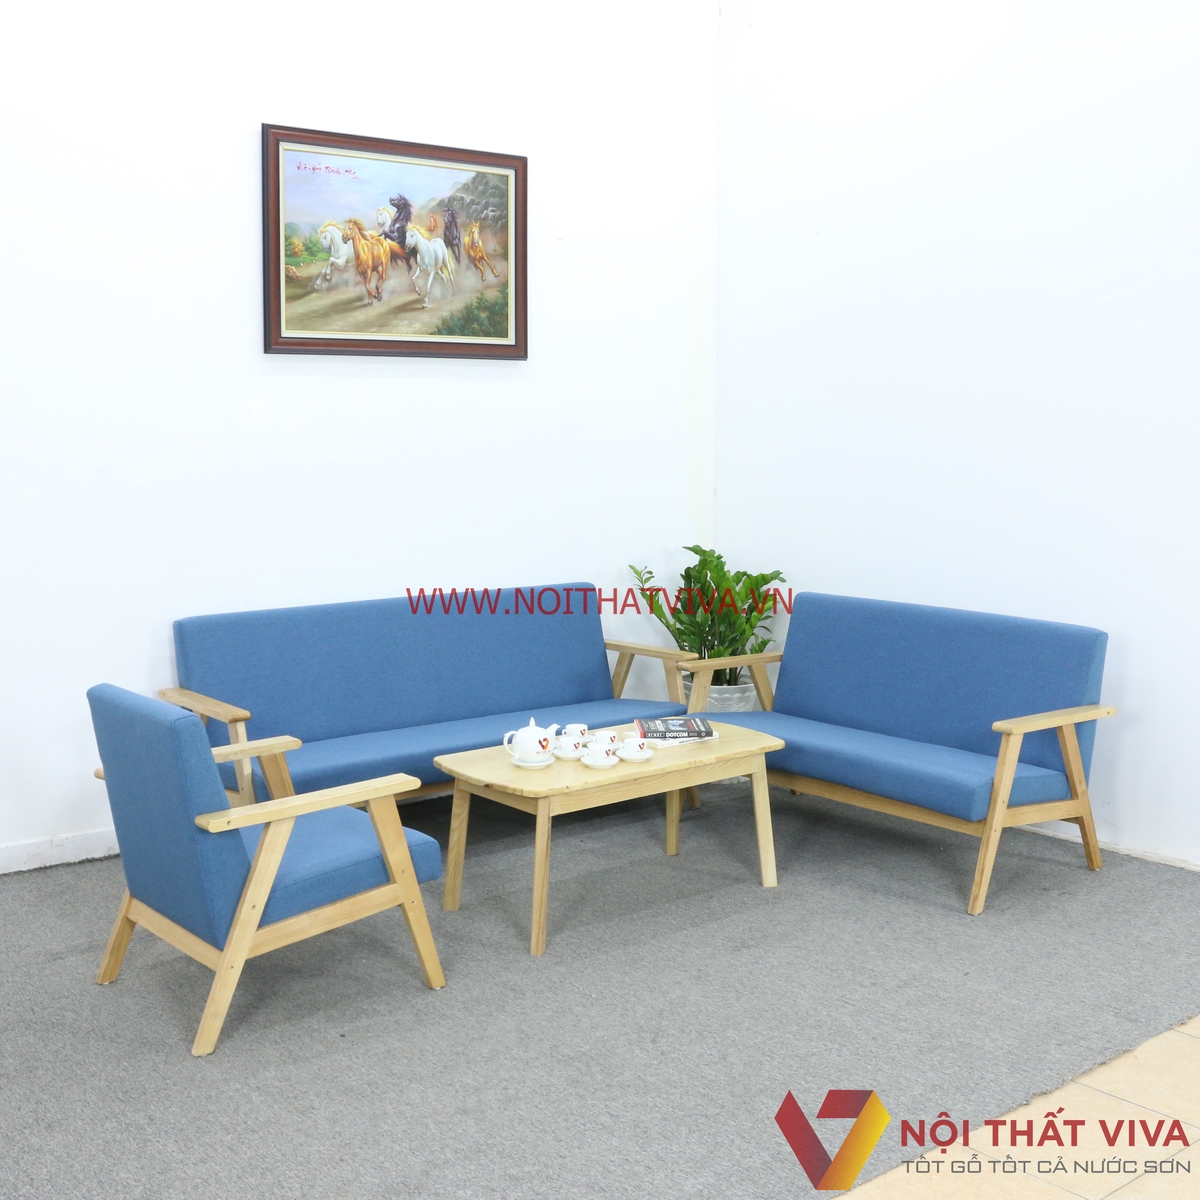 Bàn ghế gỗ phòng khách 20m2 của chúng tôi đem lại cho bạn một không gian nghỉ ngơi tuyệt vời, với sự kết hợp giữa chất lượng và thẩm mỹ. Nhấp để xem hình ảnh chi tiết!